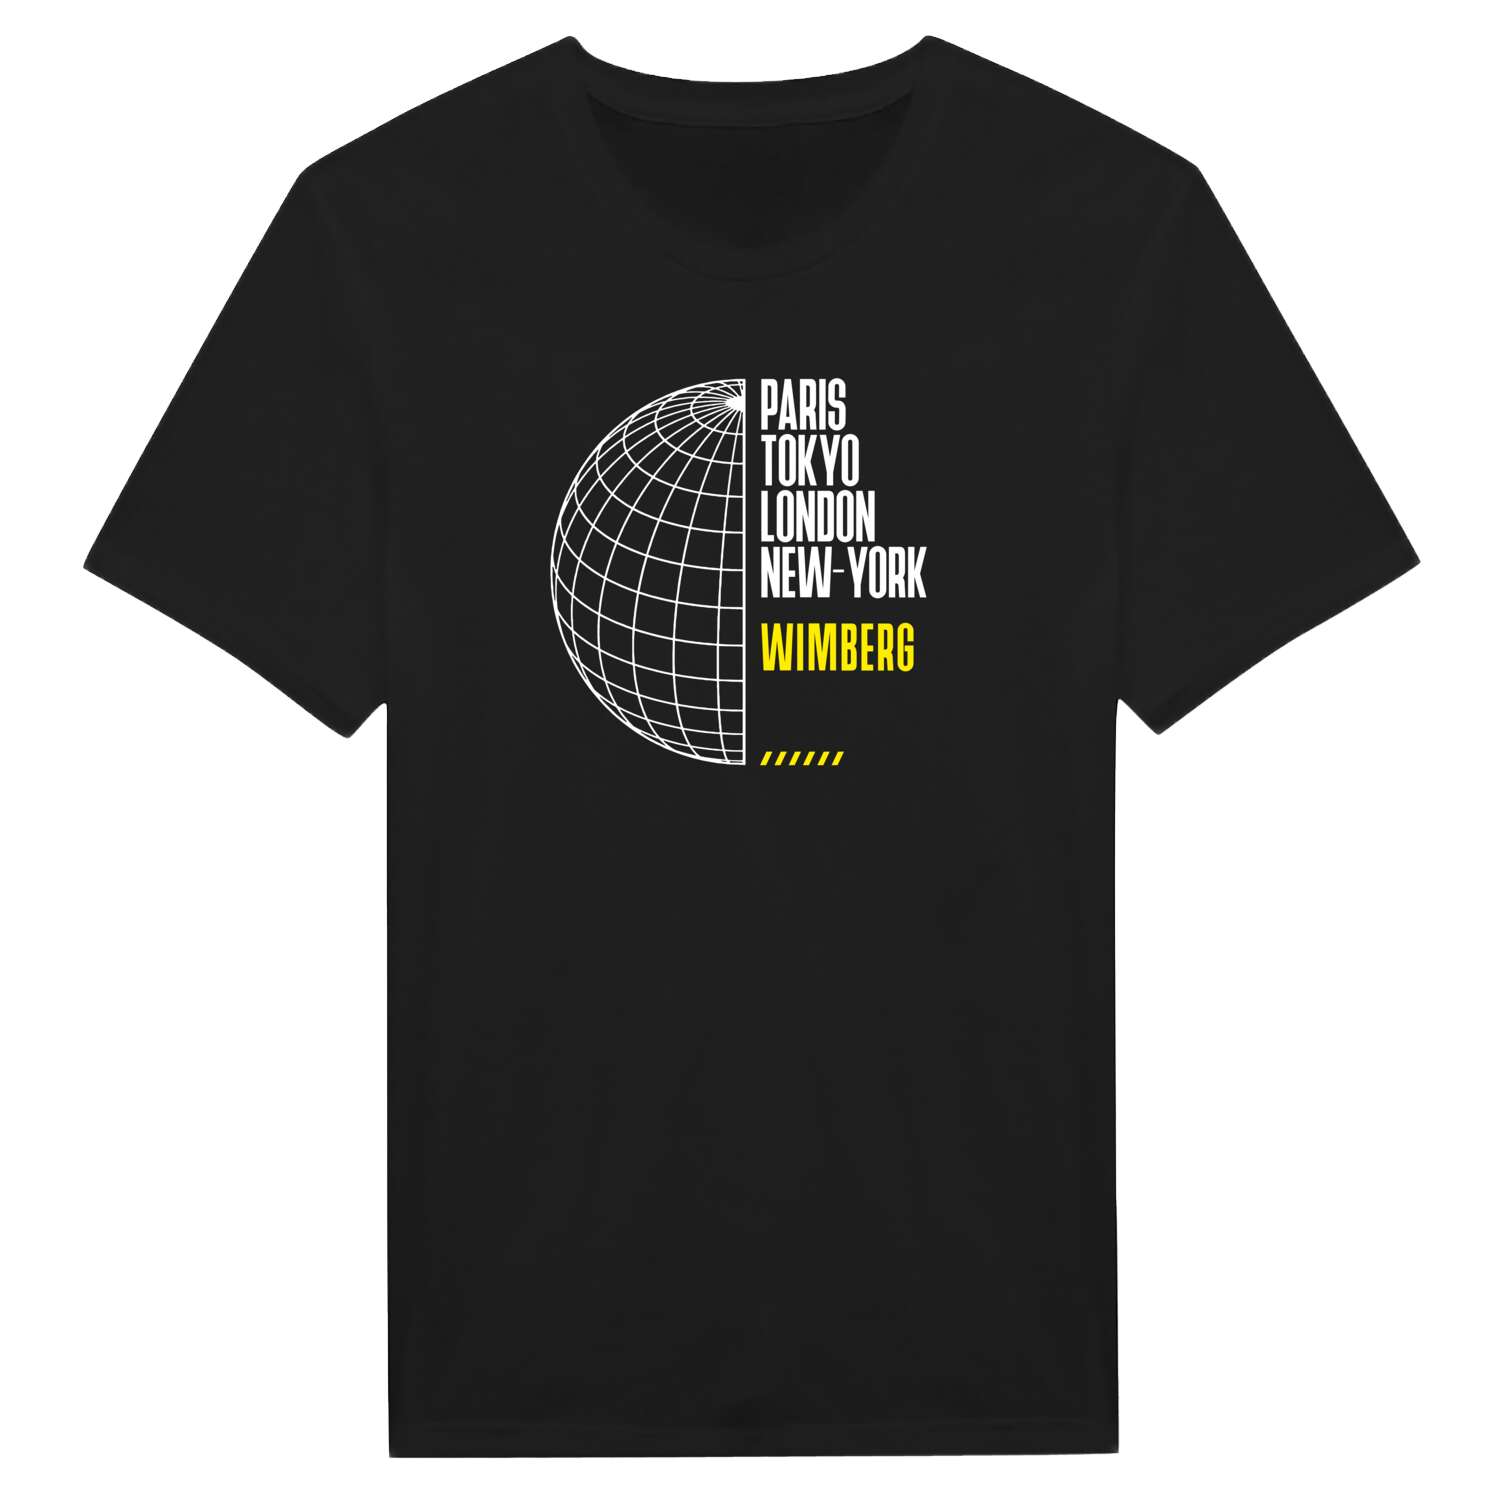 Wimberg T-Shirt »Paris Tokyo London«